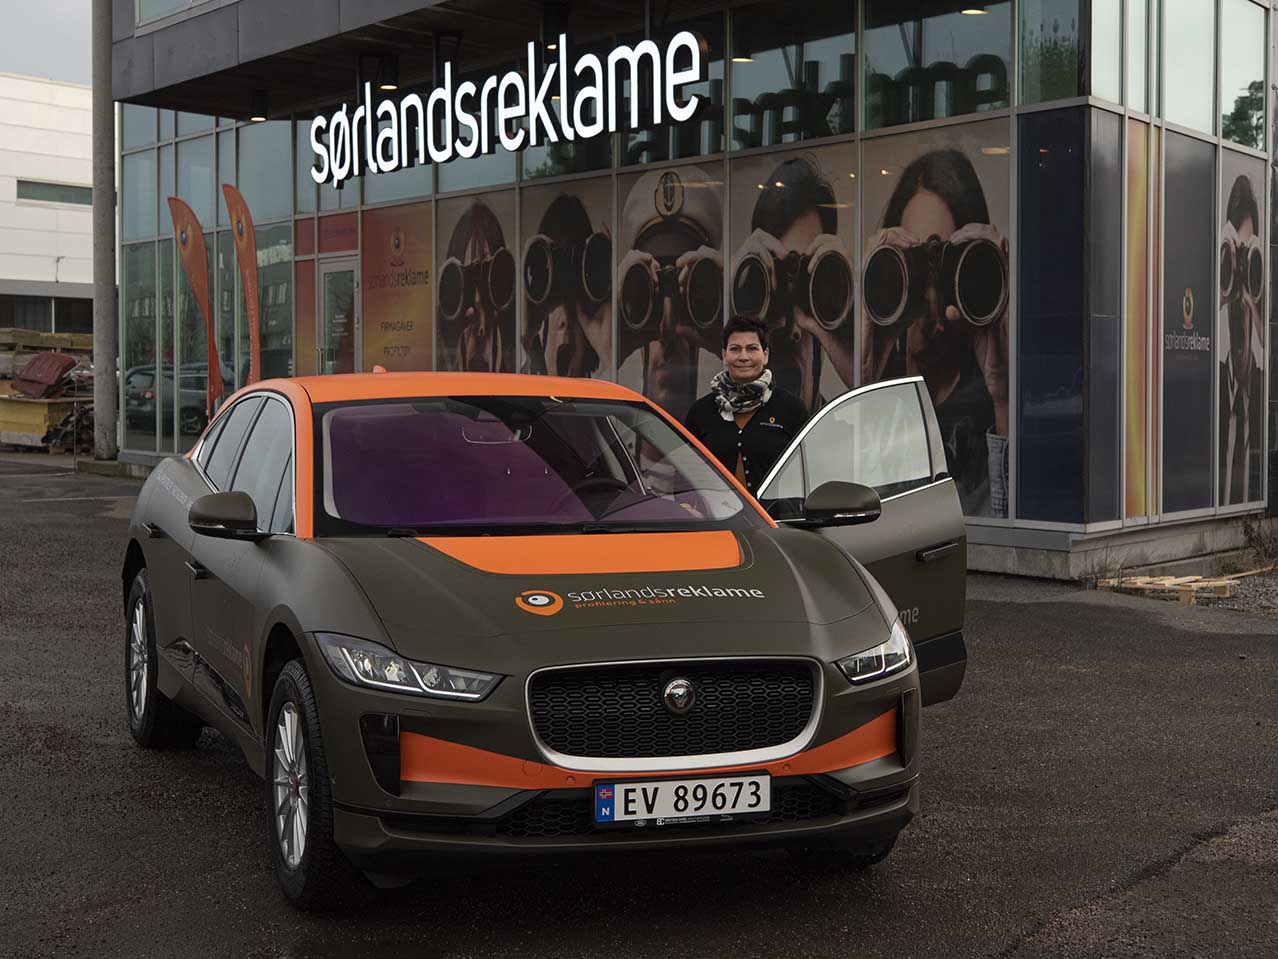 Lill Cathrine Paulsen ved siden av profilert bil ved Sørlandsreklame